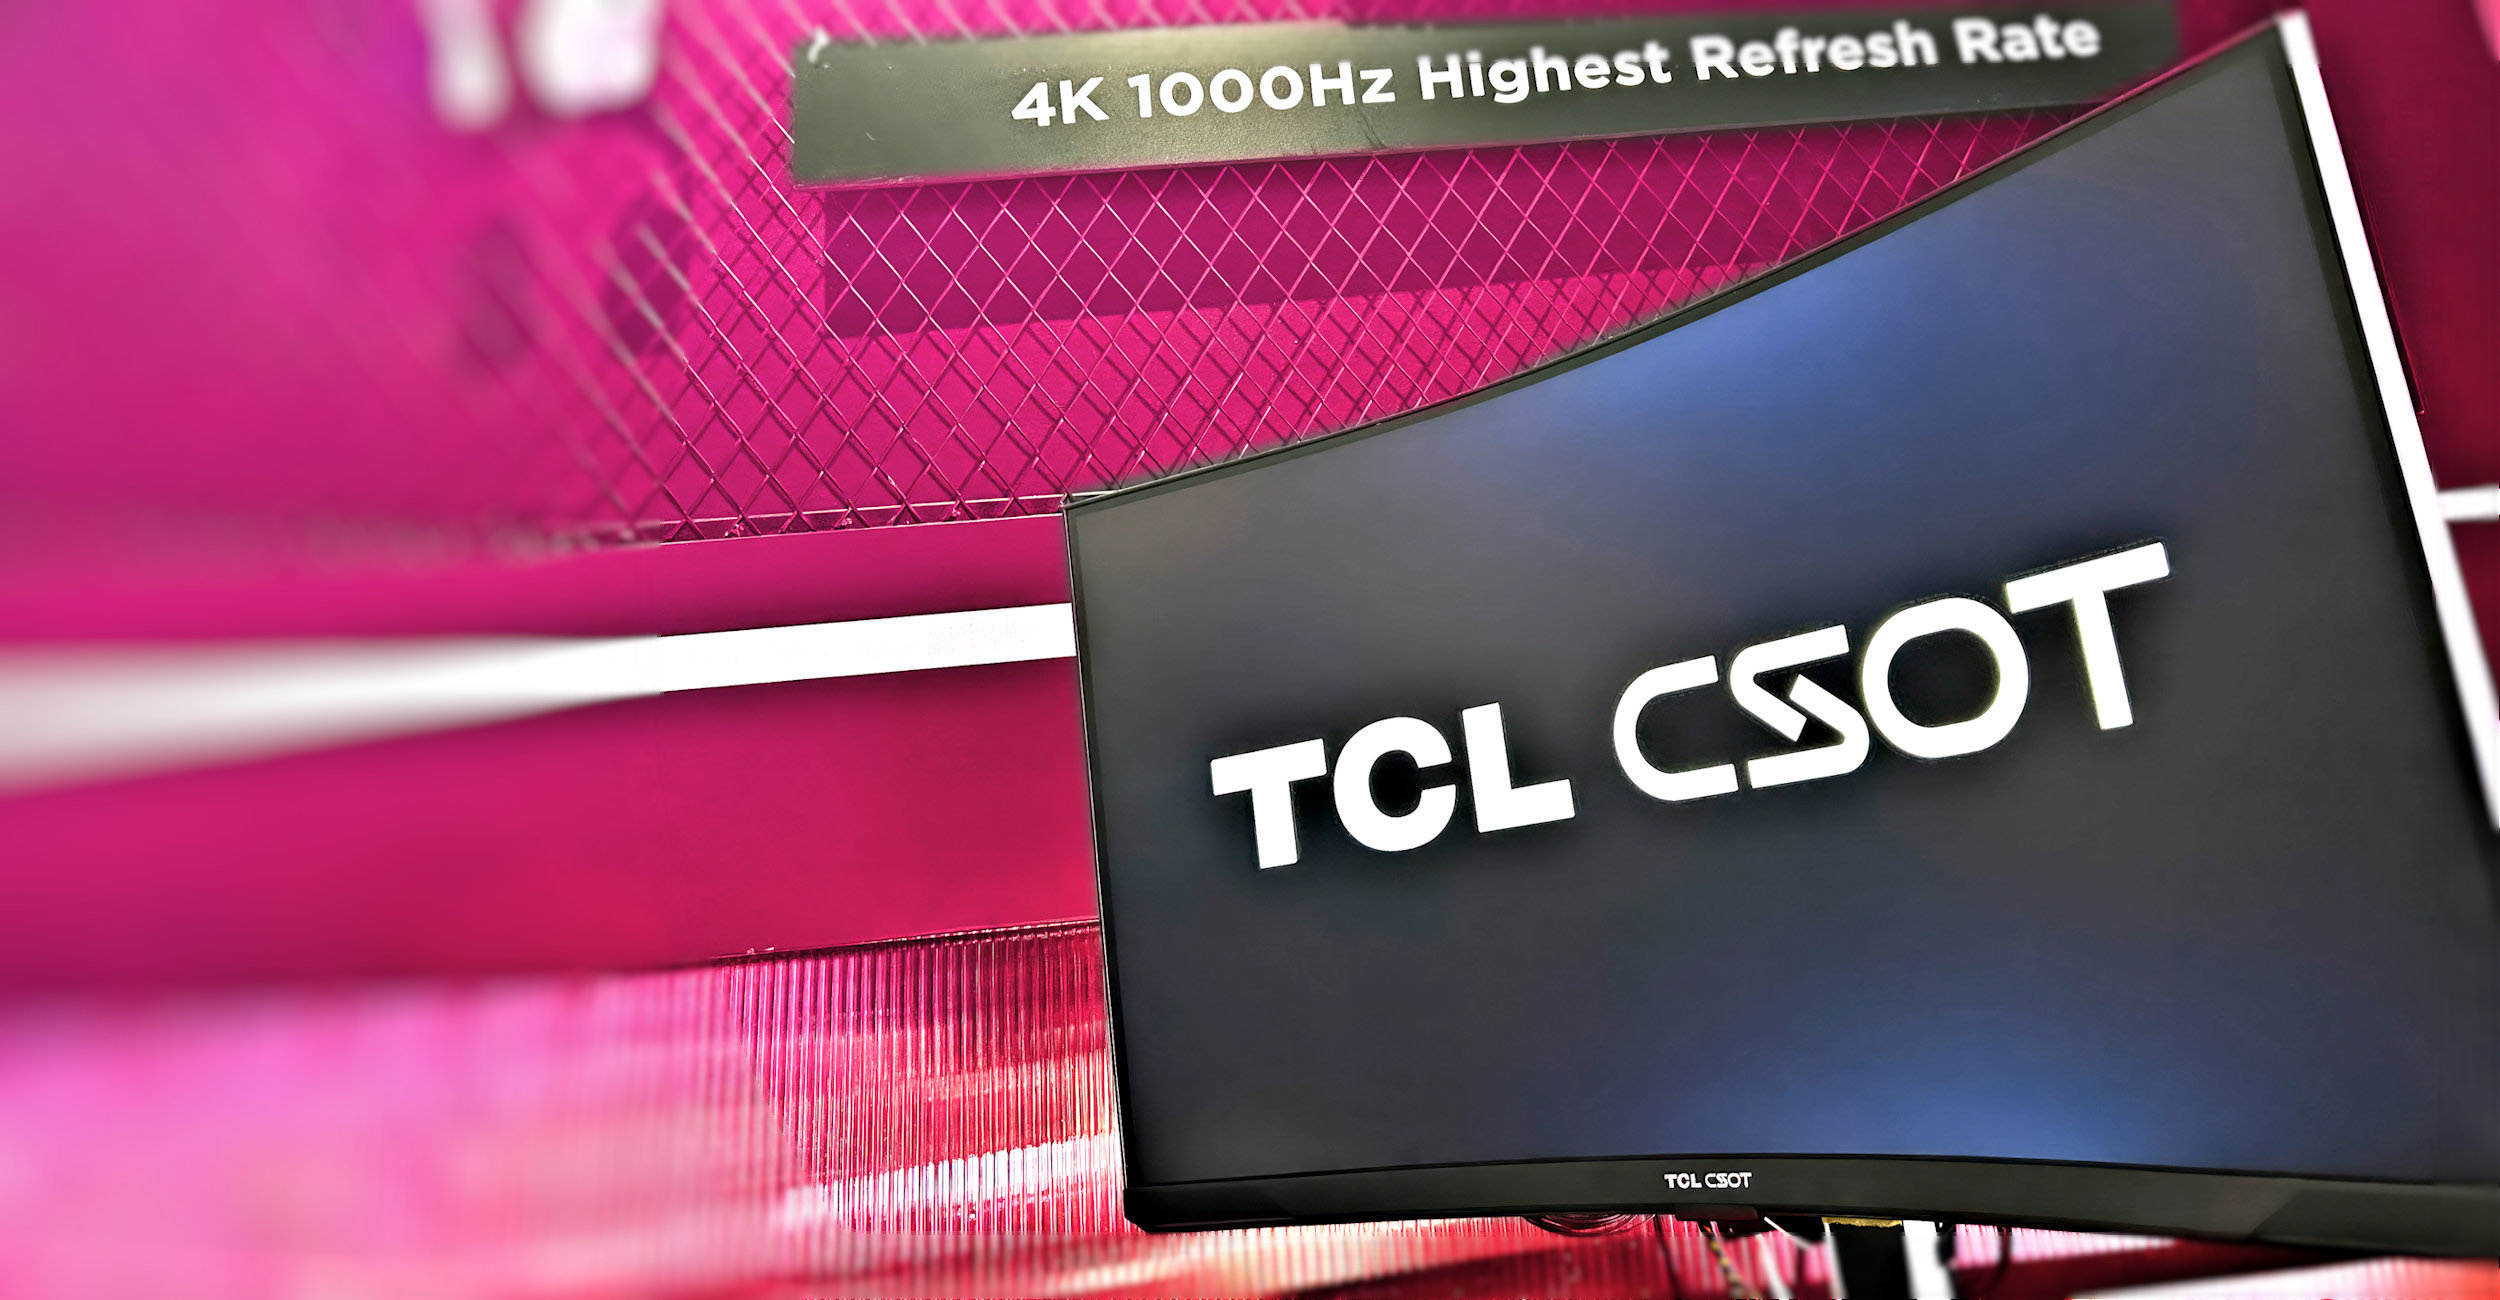 TCL CSOT ra mắt tấm nền 4K 1000 Hz đầu tiên trên thế giới